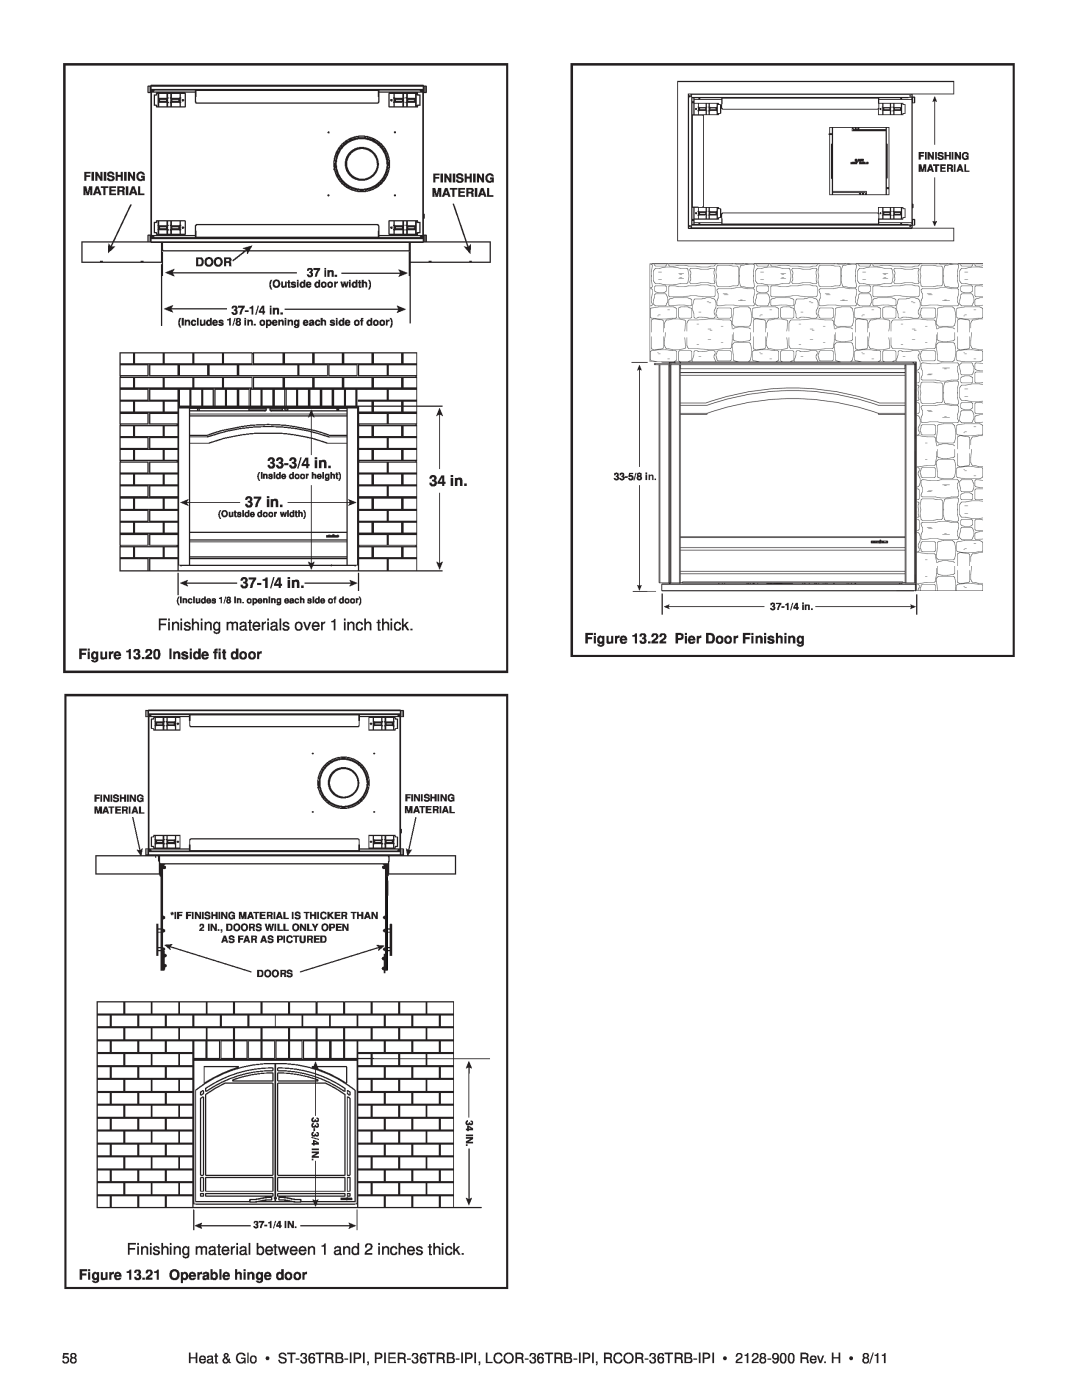 Heat & Glo LifeStyle ST-36TRB-IPI owner manual 33-3/4in, 34 in, 37 in, 37-1/4in, 20 Inside ﬁt door, 21 Operable hinge door 